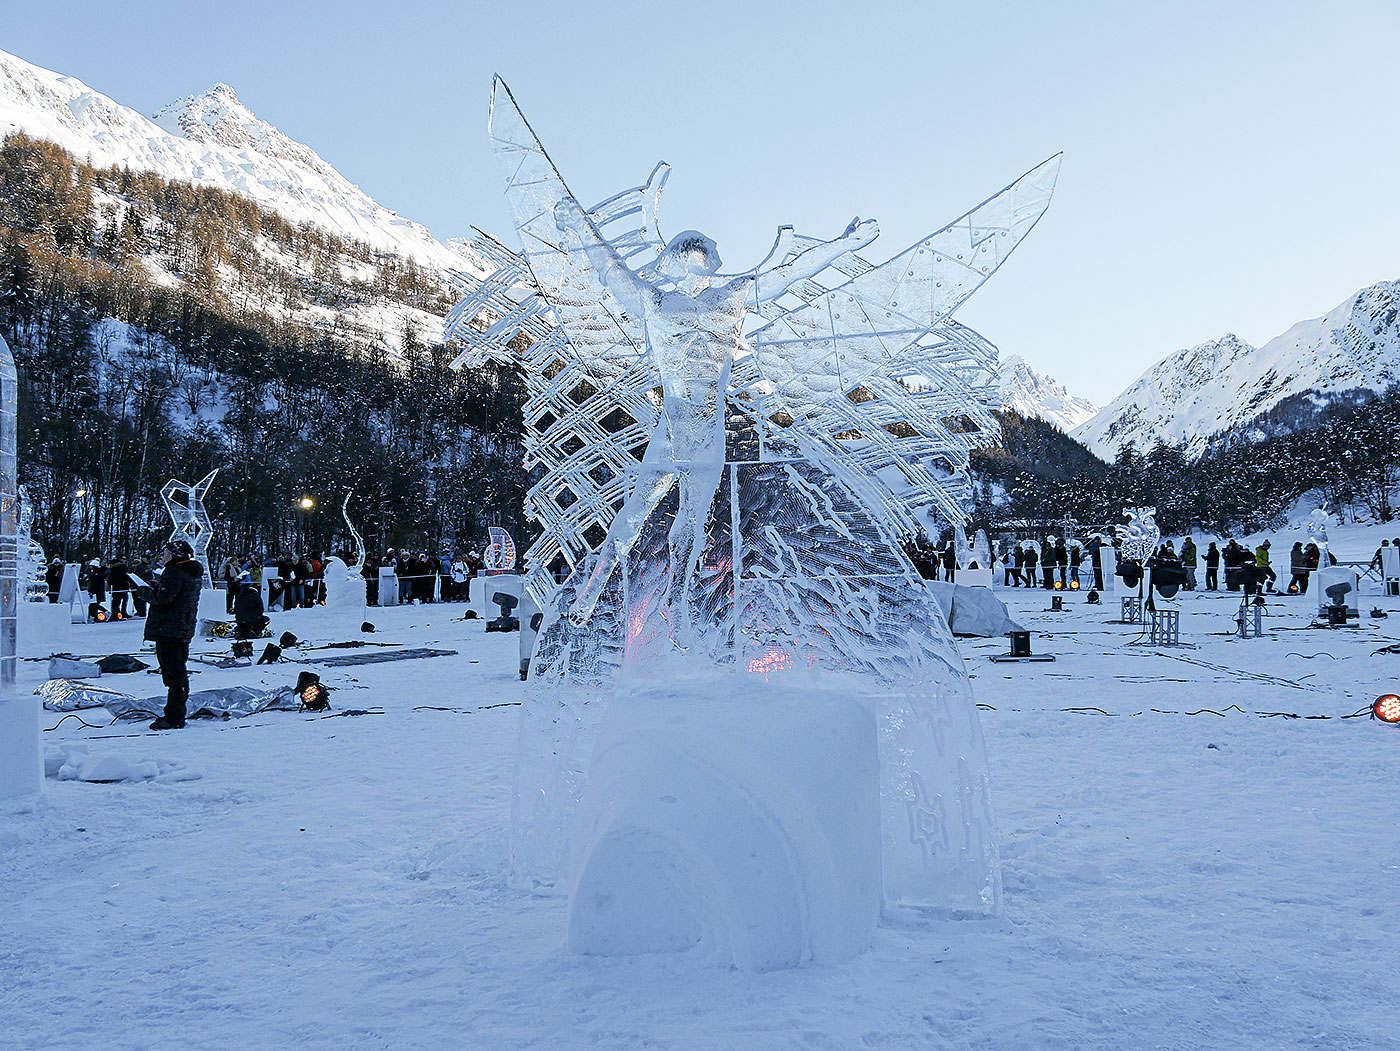 « Born to Soar » de Molokov Andrey, troisième prix du concours de sculptures sur glace de Valloire